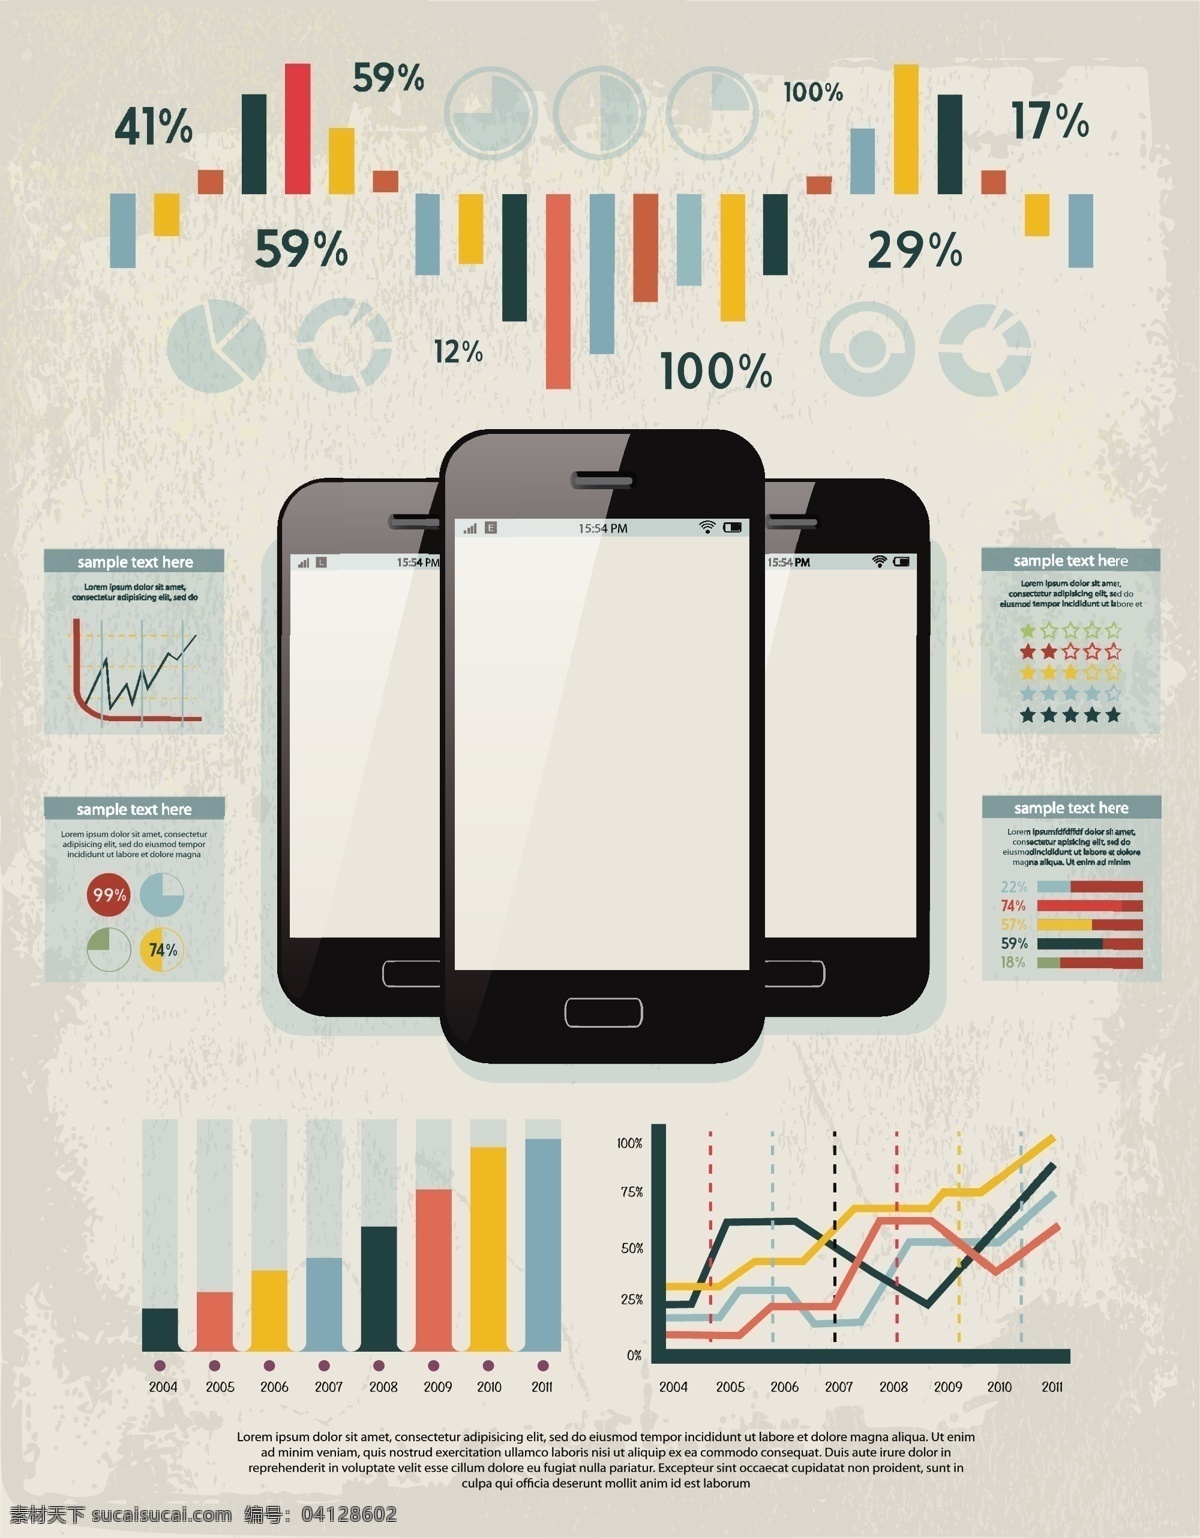 分布 分析 概率 金融 理财 趋势 商务 商务金融 商业插画 数据 统计 矢量 模板下载 手机 手绘 图标 app app图标